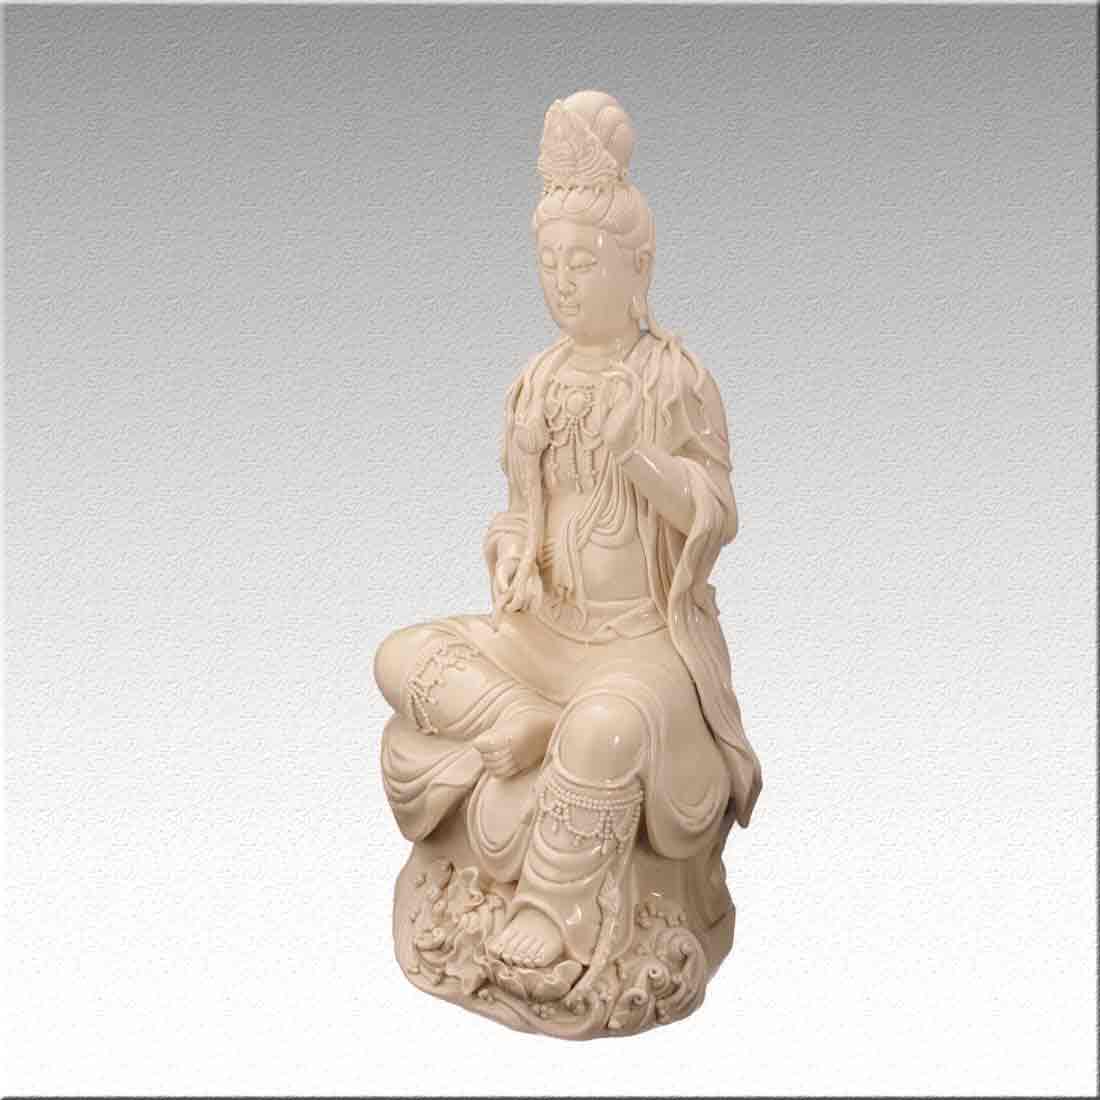 Статуэтка, фарфоровая "Гуань Инь" – богиня милосердия и сострадания в интернет студии декора ChinaHouse.Studio